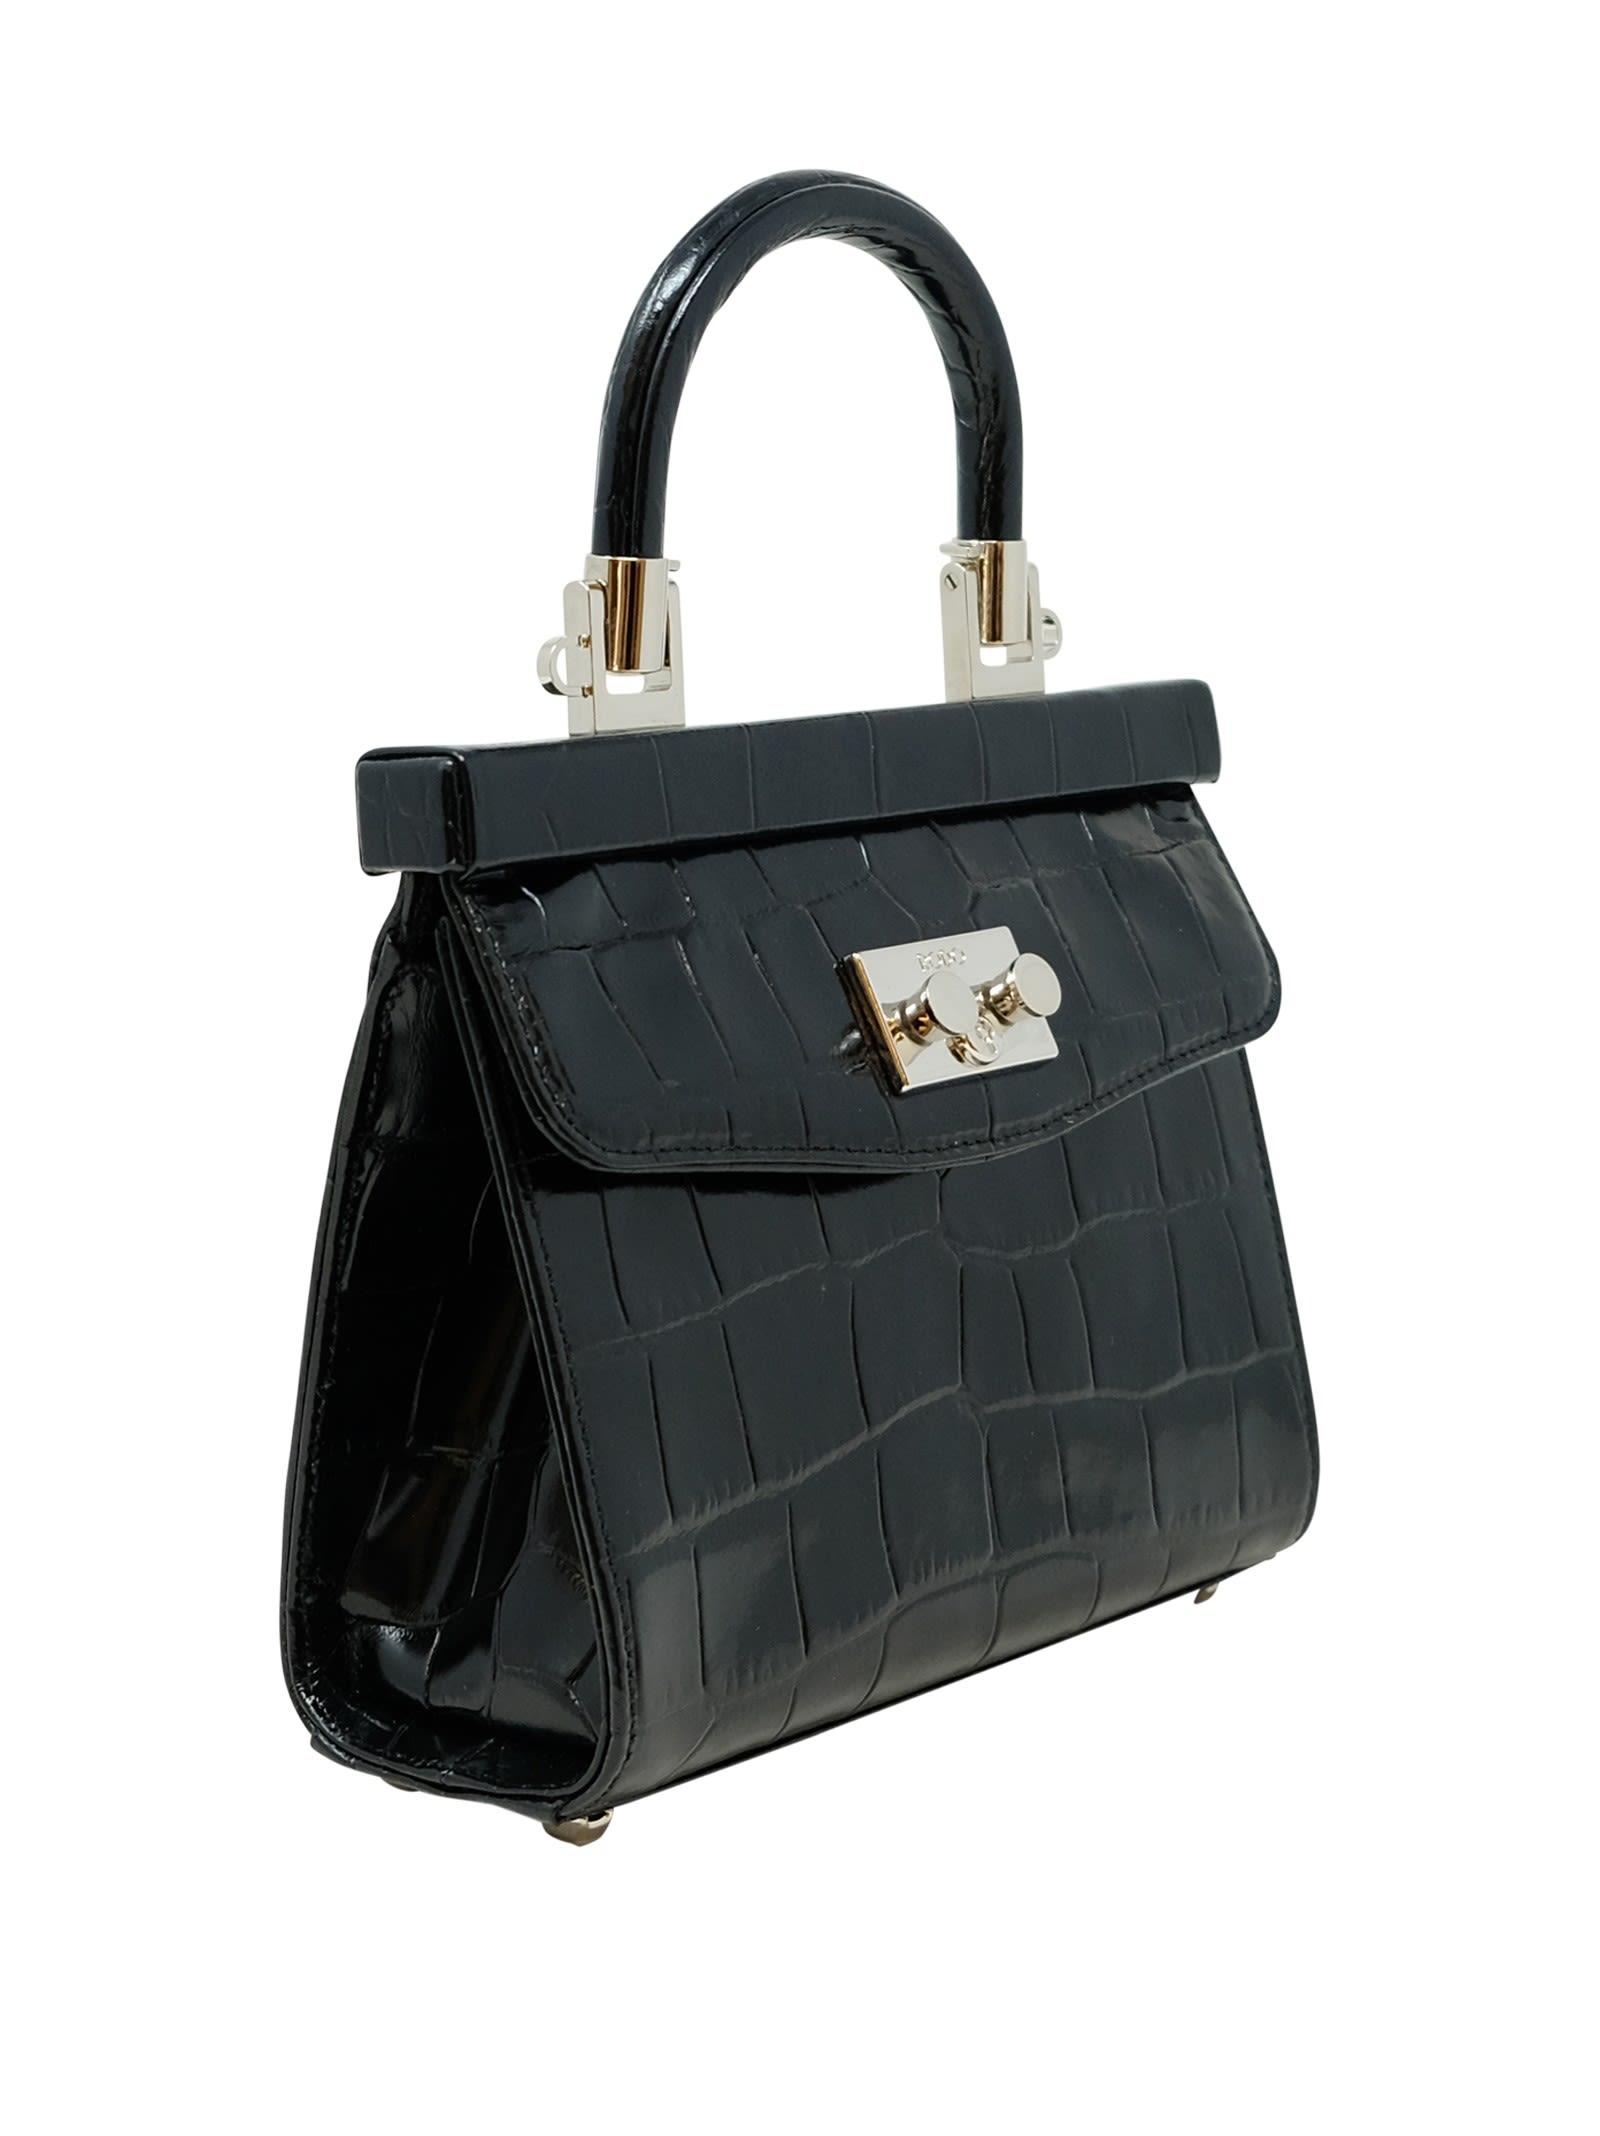 Shop Rodo Black Croco Leather Paris Handbag